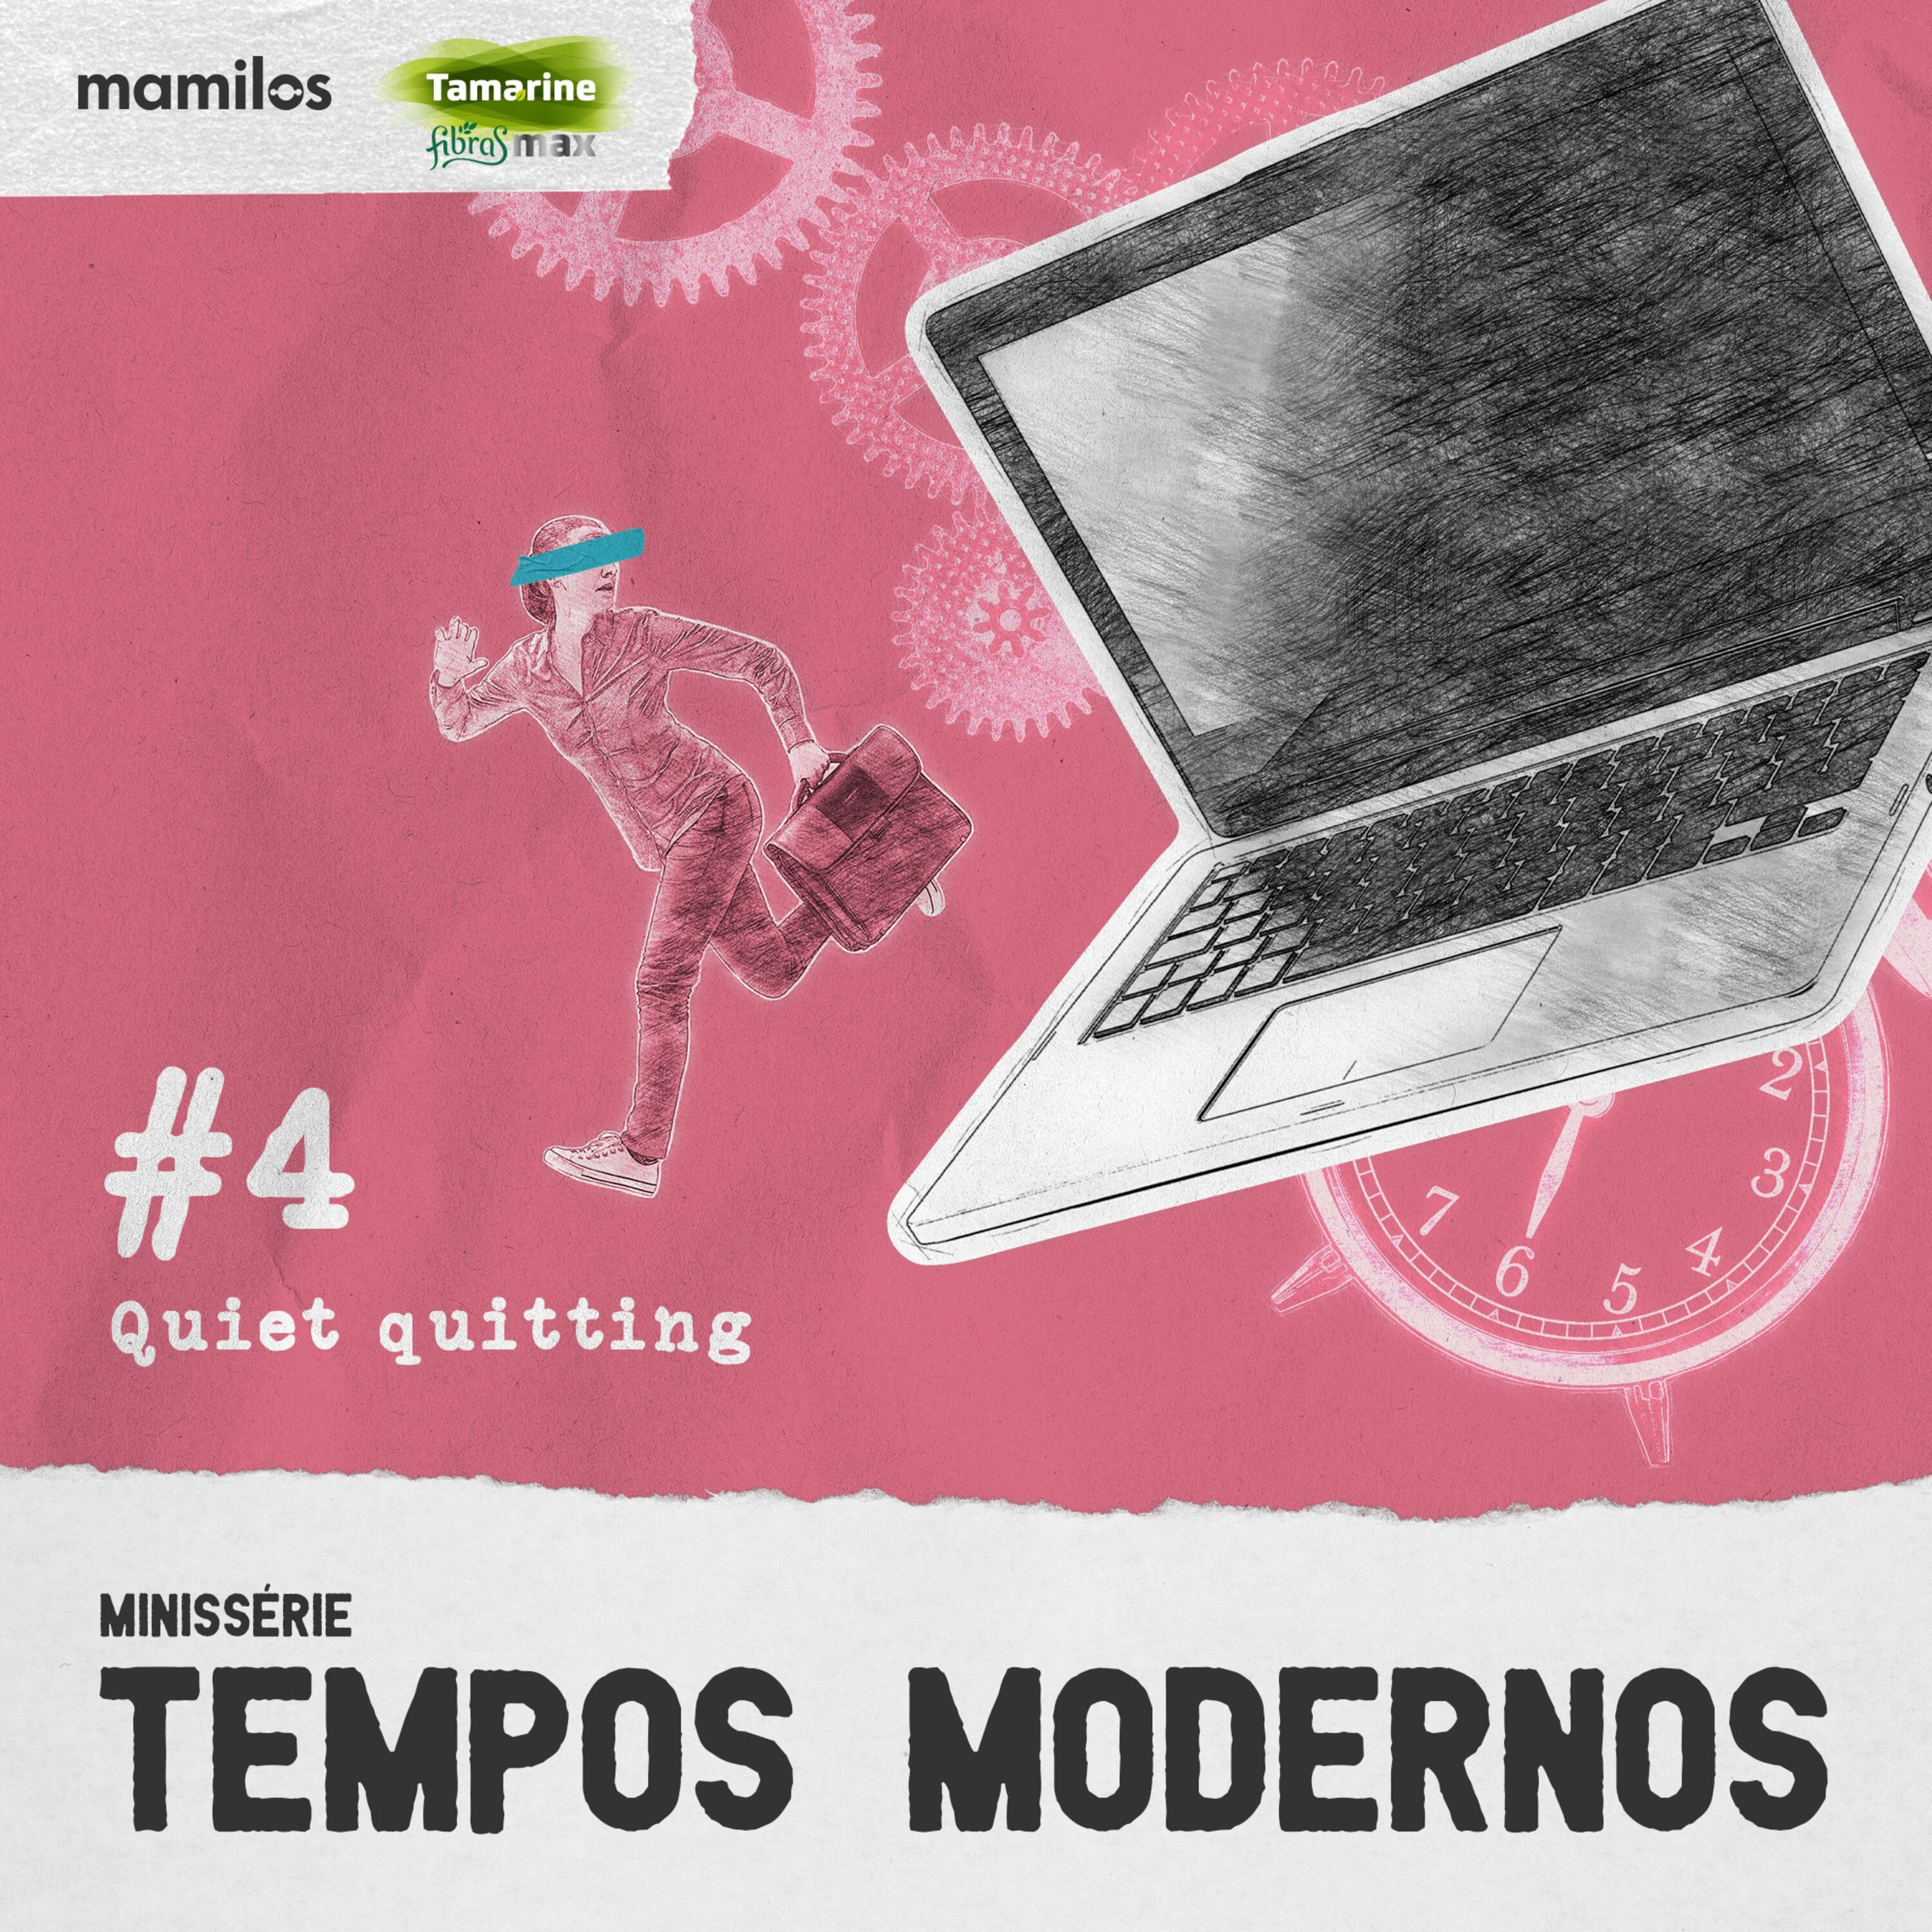 Tempos Modernos - Ep. 4: Quiet quitting